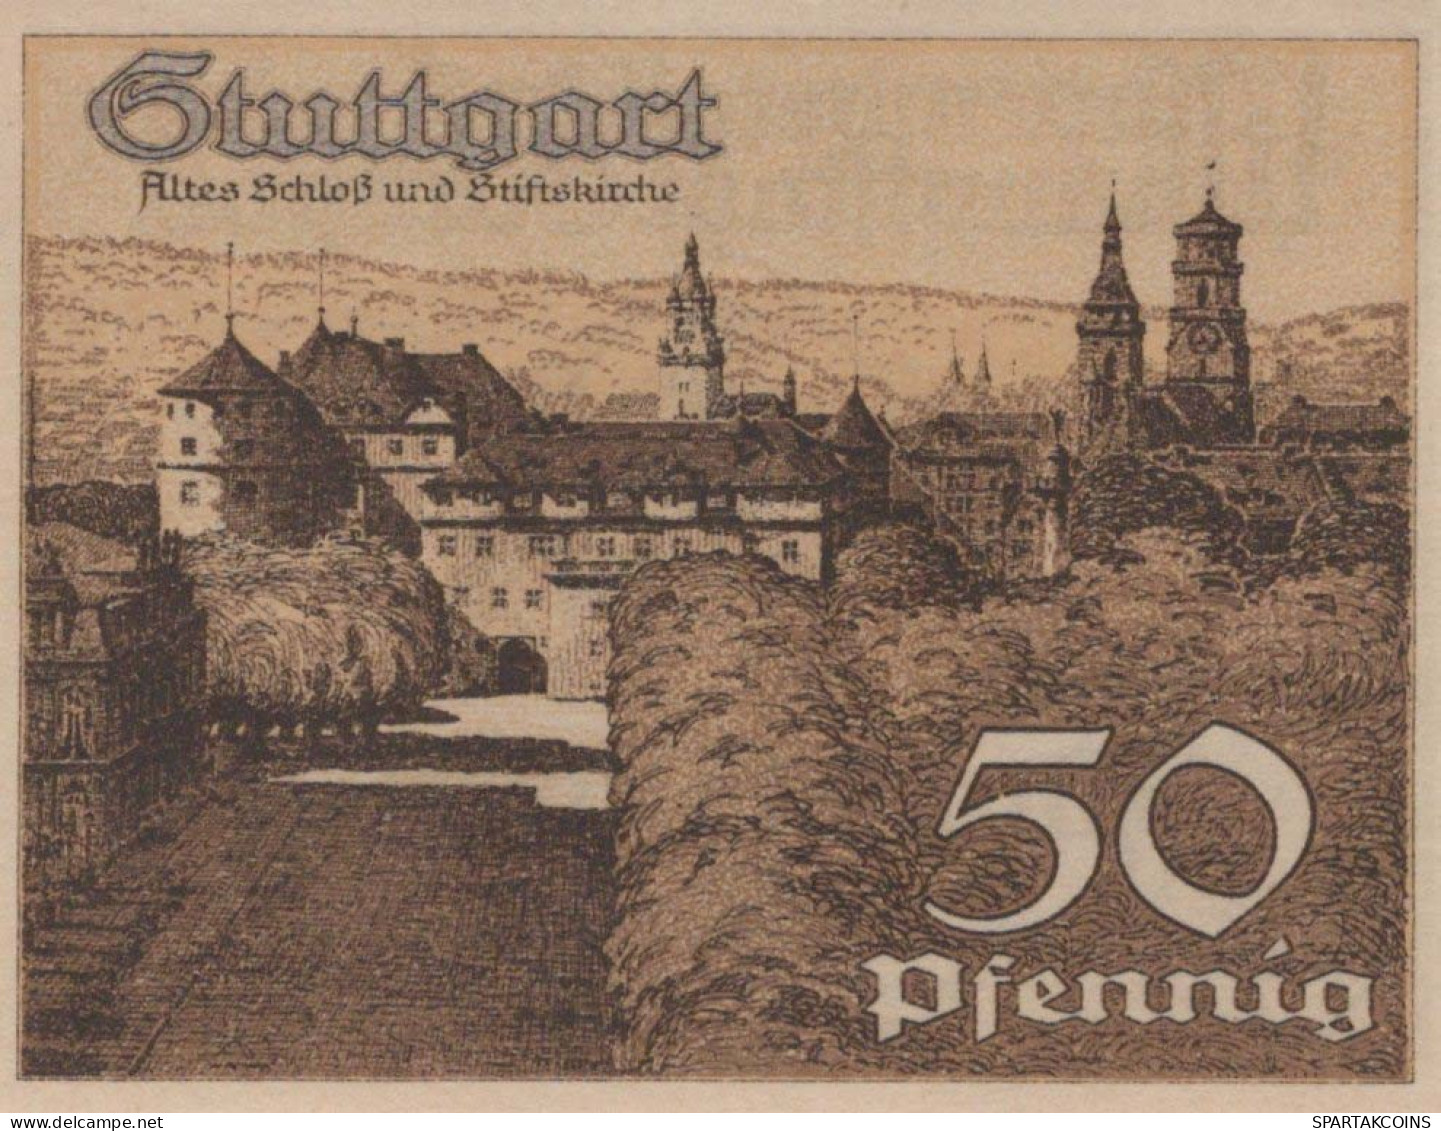 50 PFENNIG 1921 Stadt STUTTGART Württemberg UNC DEUTSCHLAND Notgeld #PC417 - [11] Emissions Locales